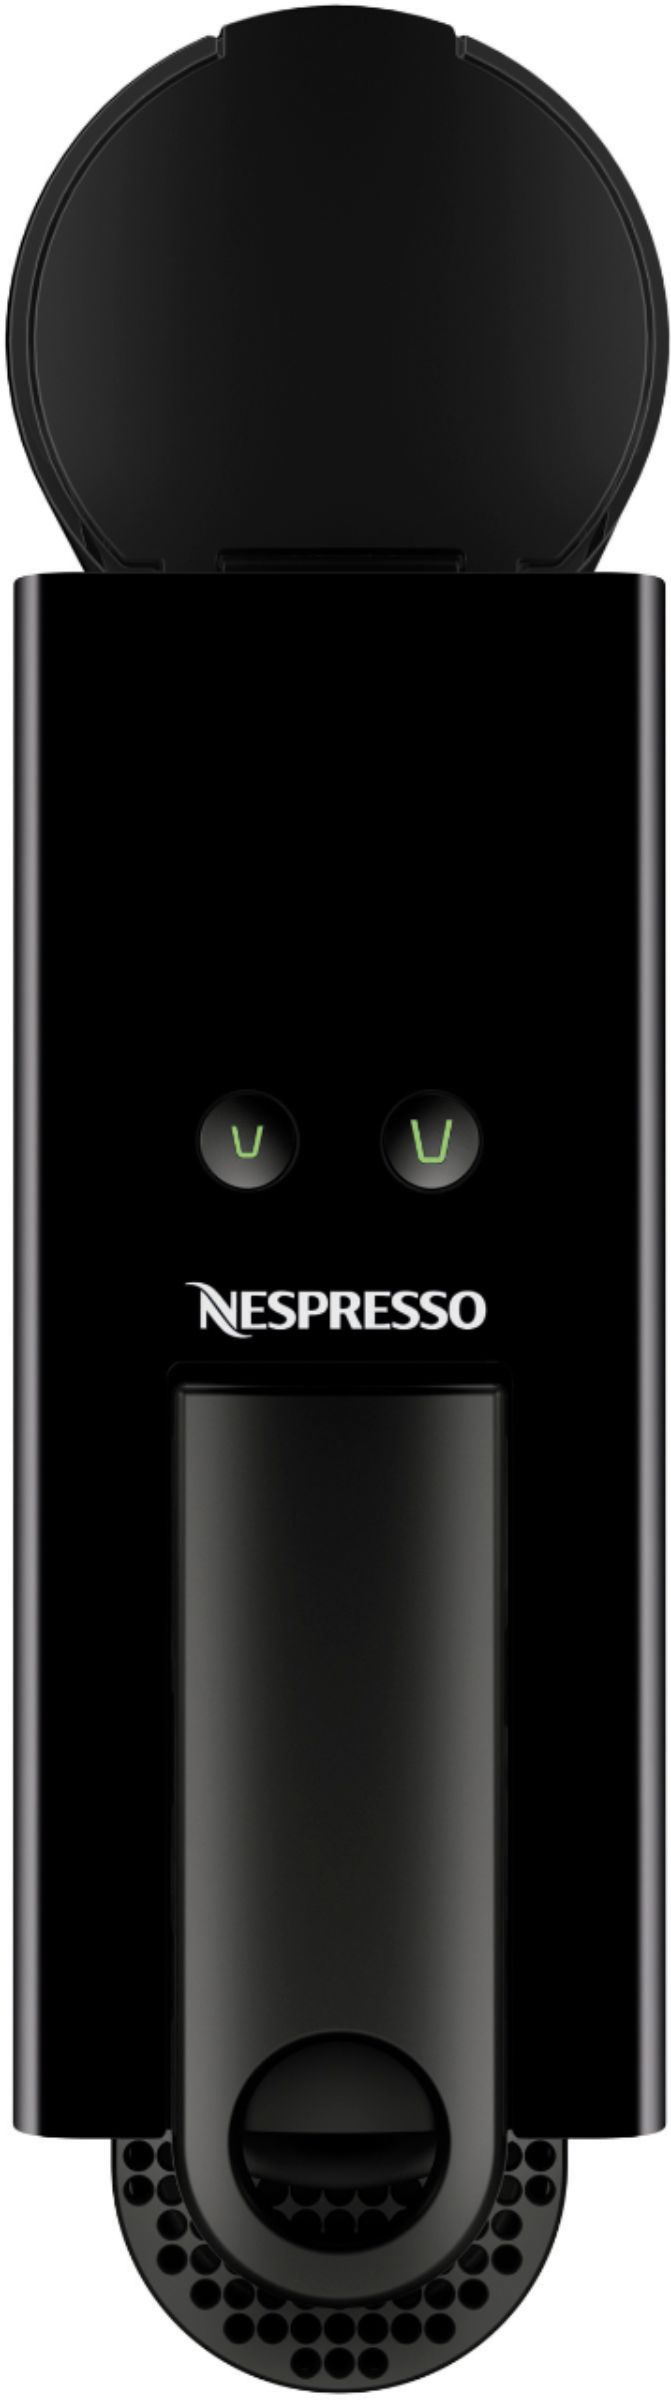 Nespresso Essenza Mini Black by Breville with Aeroccino3 Piano